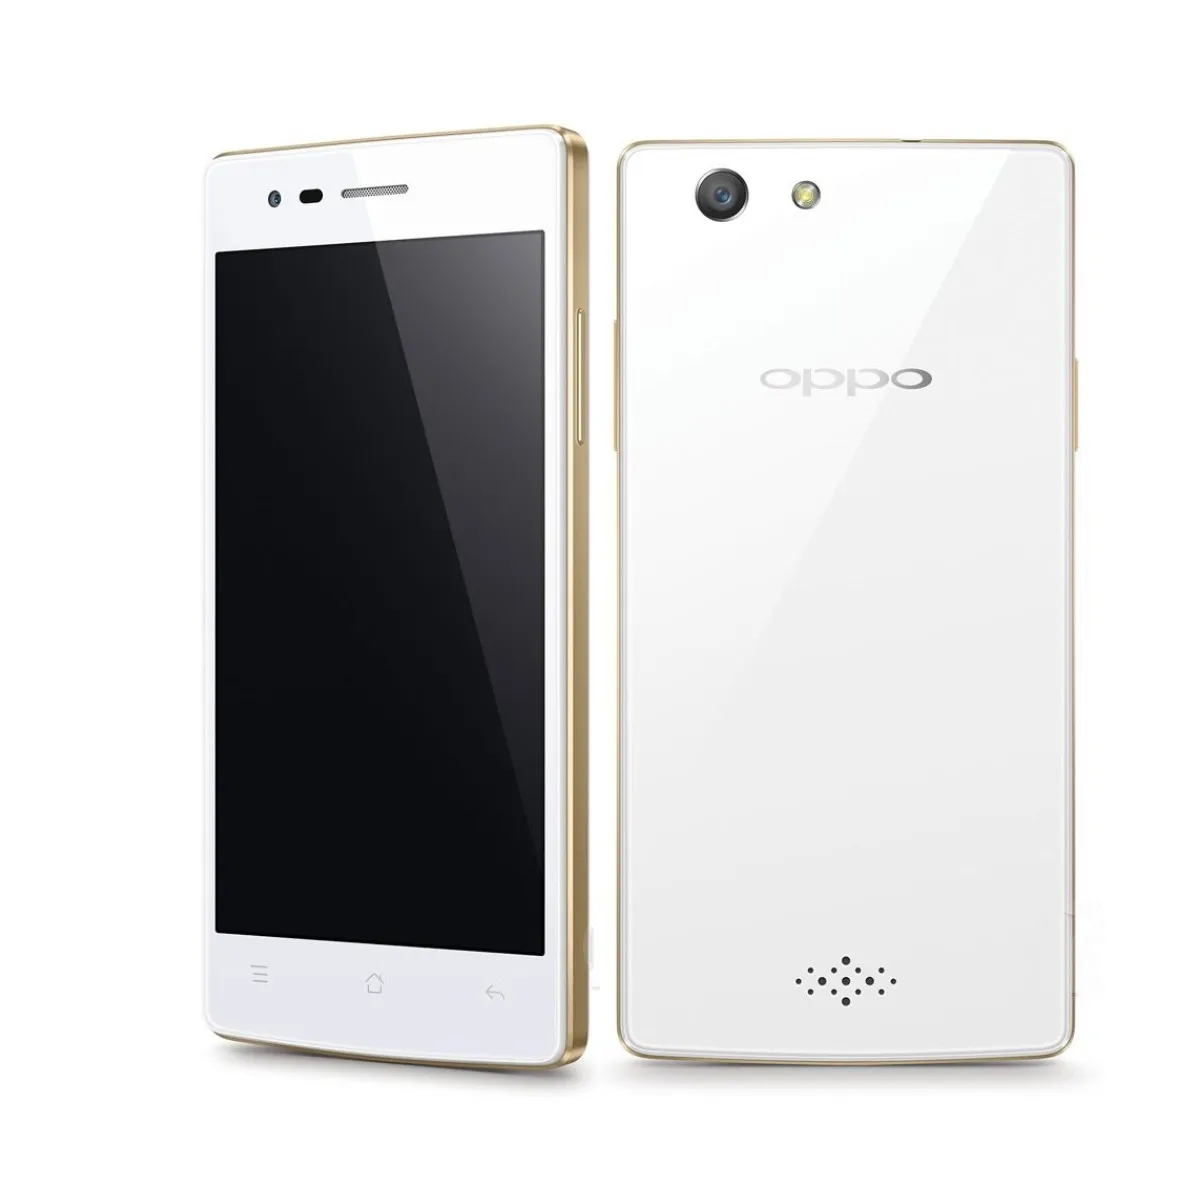 Großhandel Oppo A31 Smart Android Handy gute gebrauchte Handy verwendet globale 4G Lte Handy